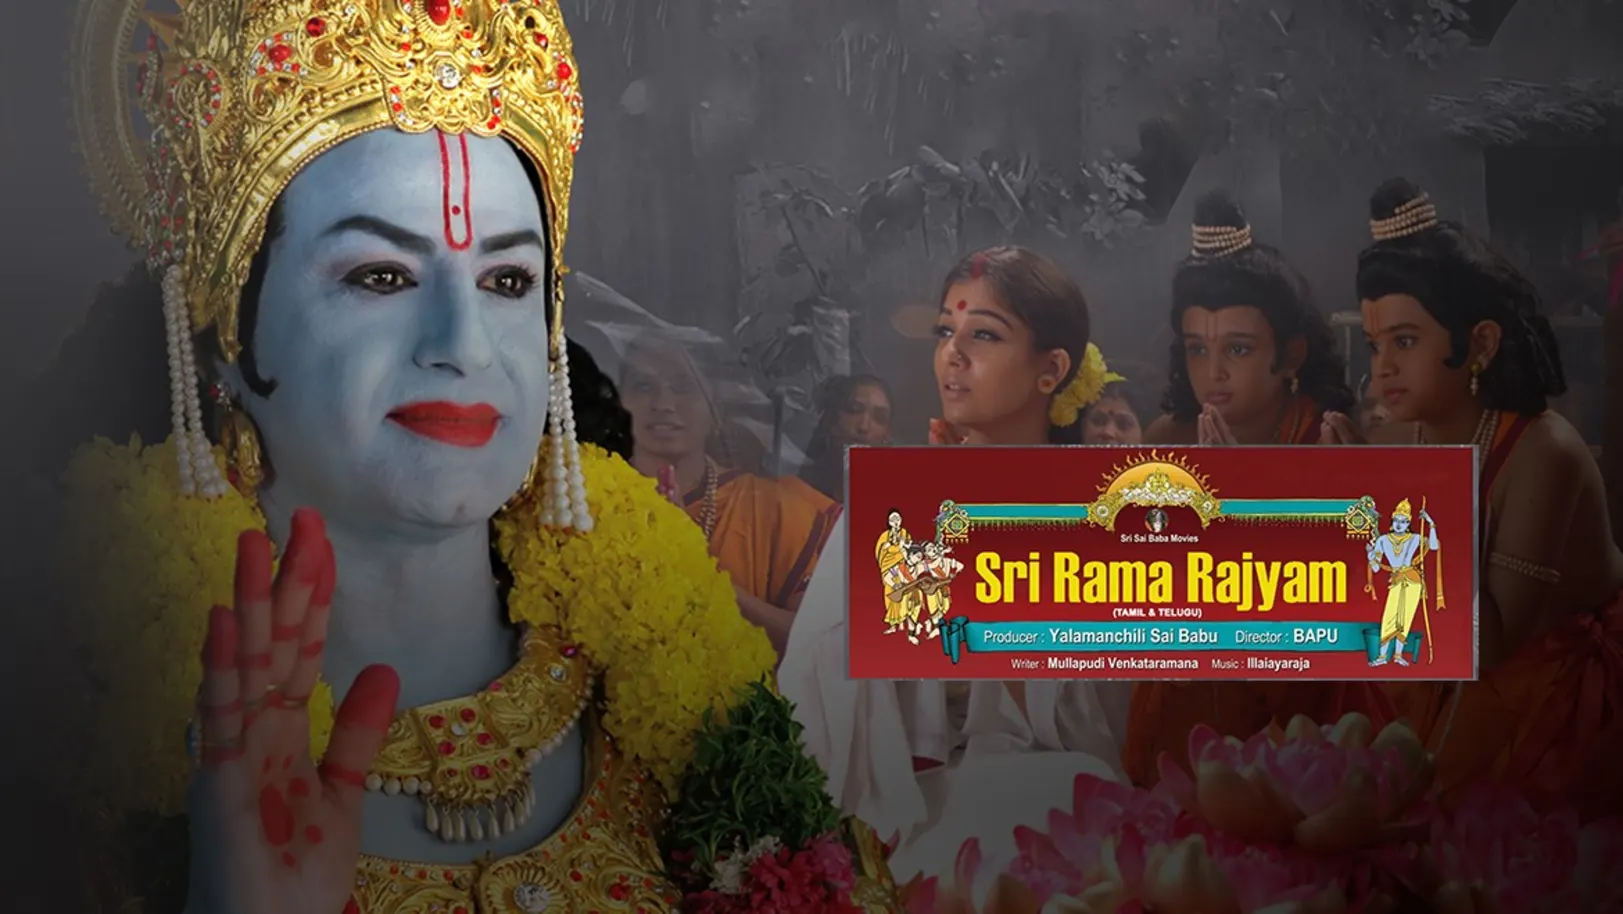 Sri Rama Rajyam Movie